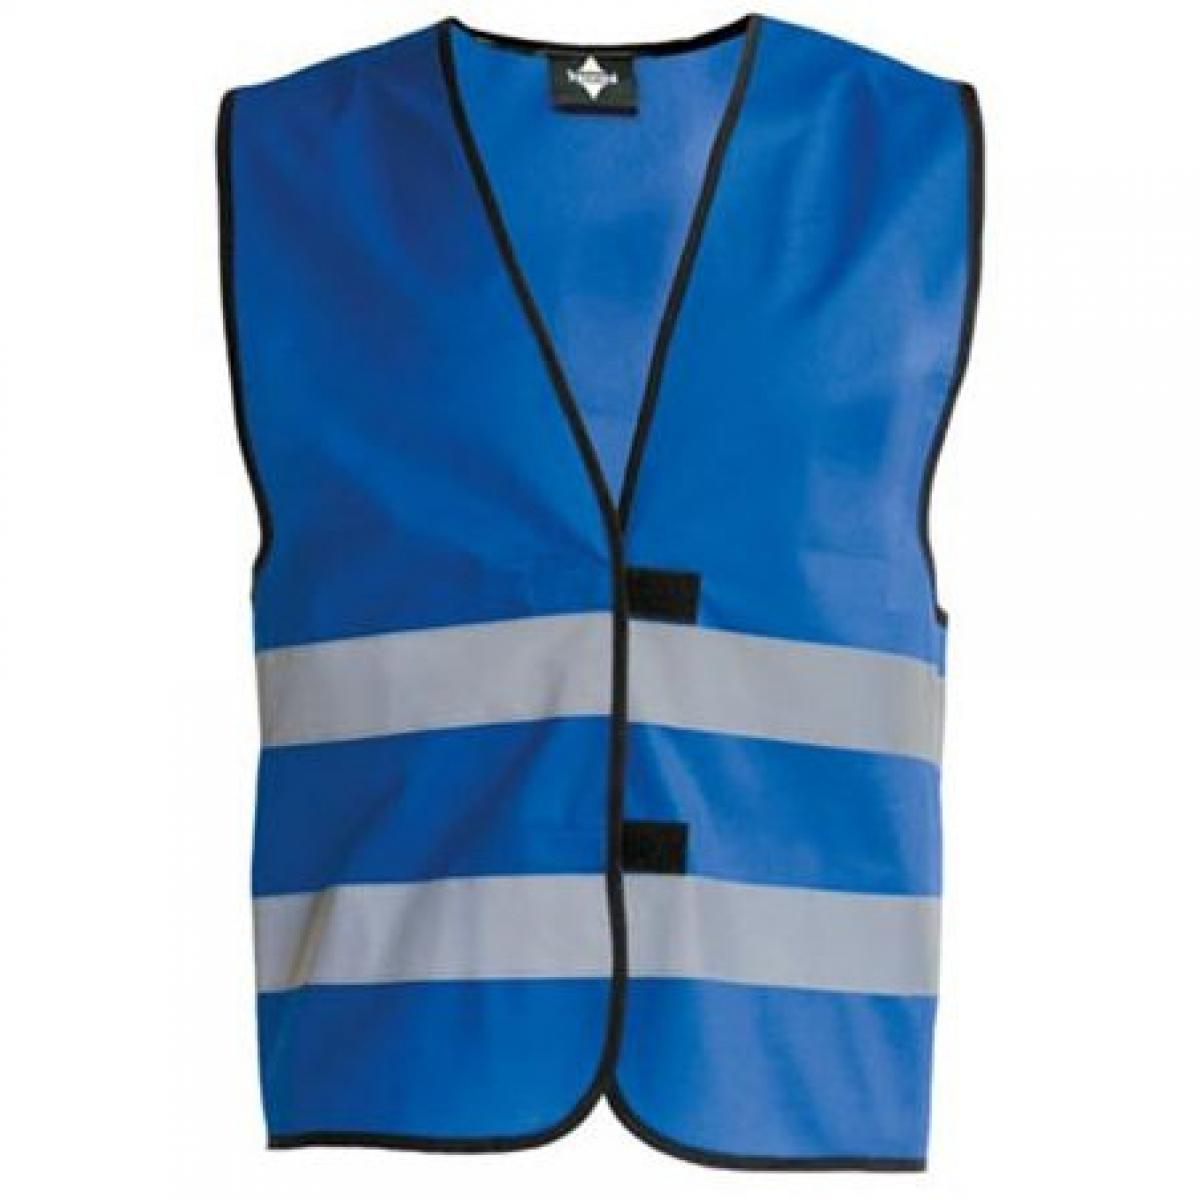 Hersteller: Korntex Herstellernummer: KW100 Artikelbezeichnung: Kinderweste Children´s Safety Vest Farbe: Blue